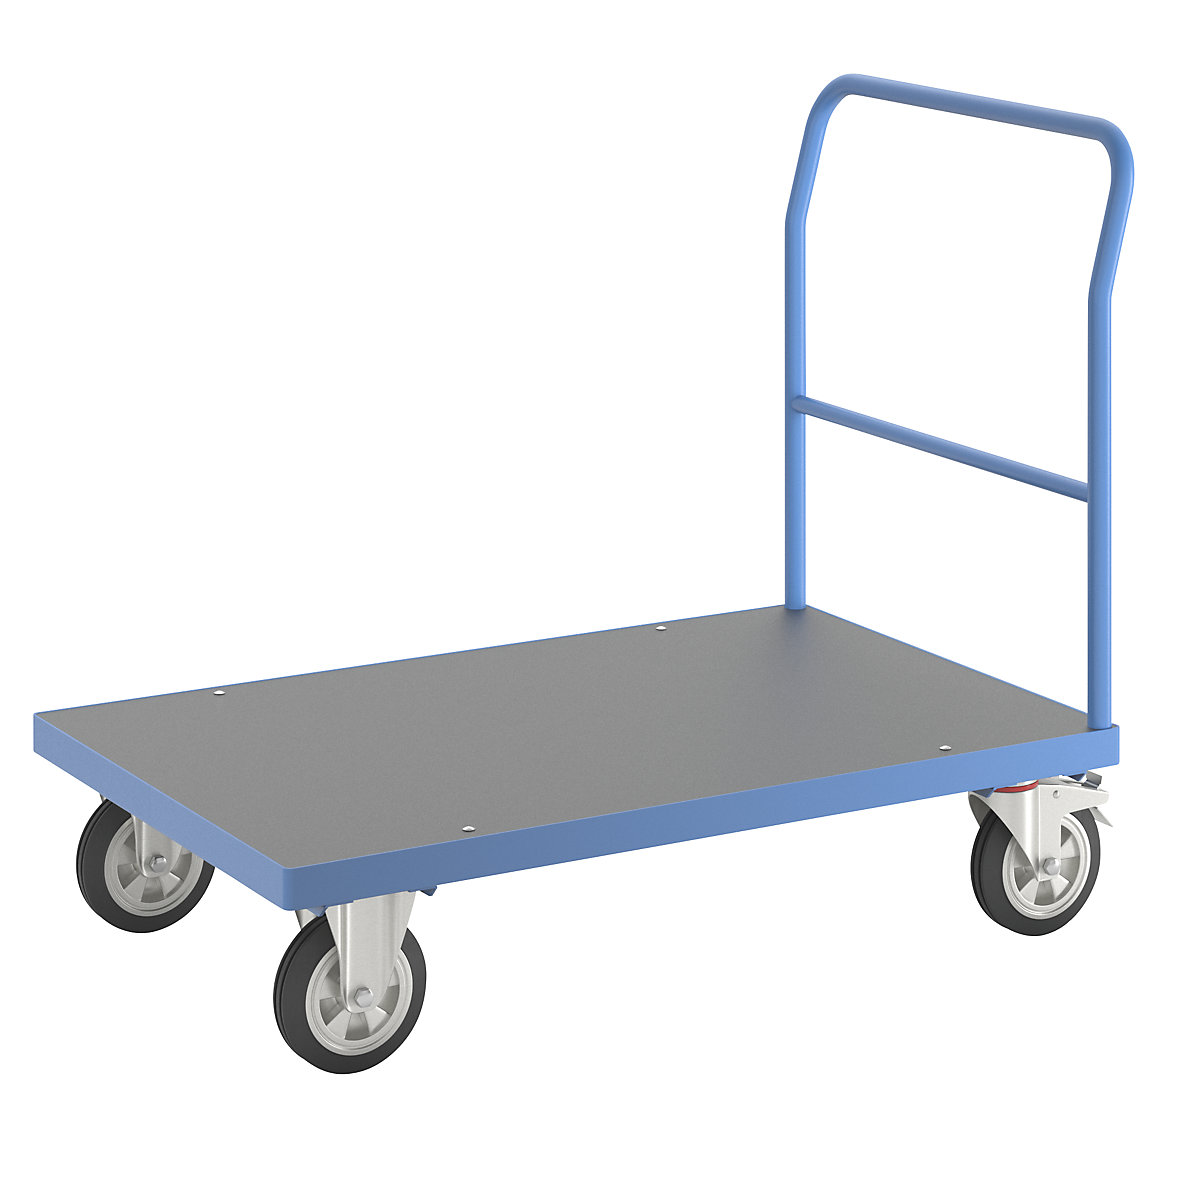 Wózek platformowy – eurokraft pro, pałąk rurowy, elastyczne ogumienie pełne, dł. x szer. 1250 x 800 mm, jasnoniebieski-10